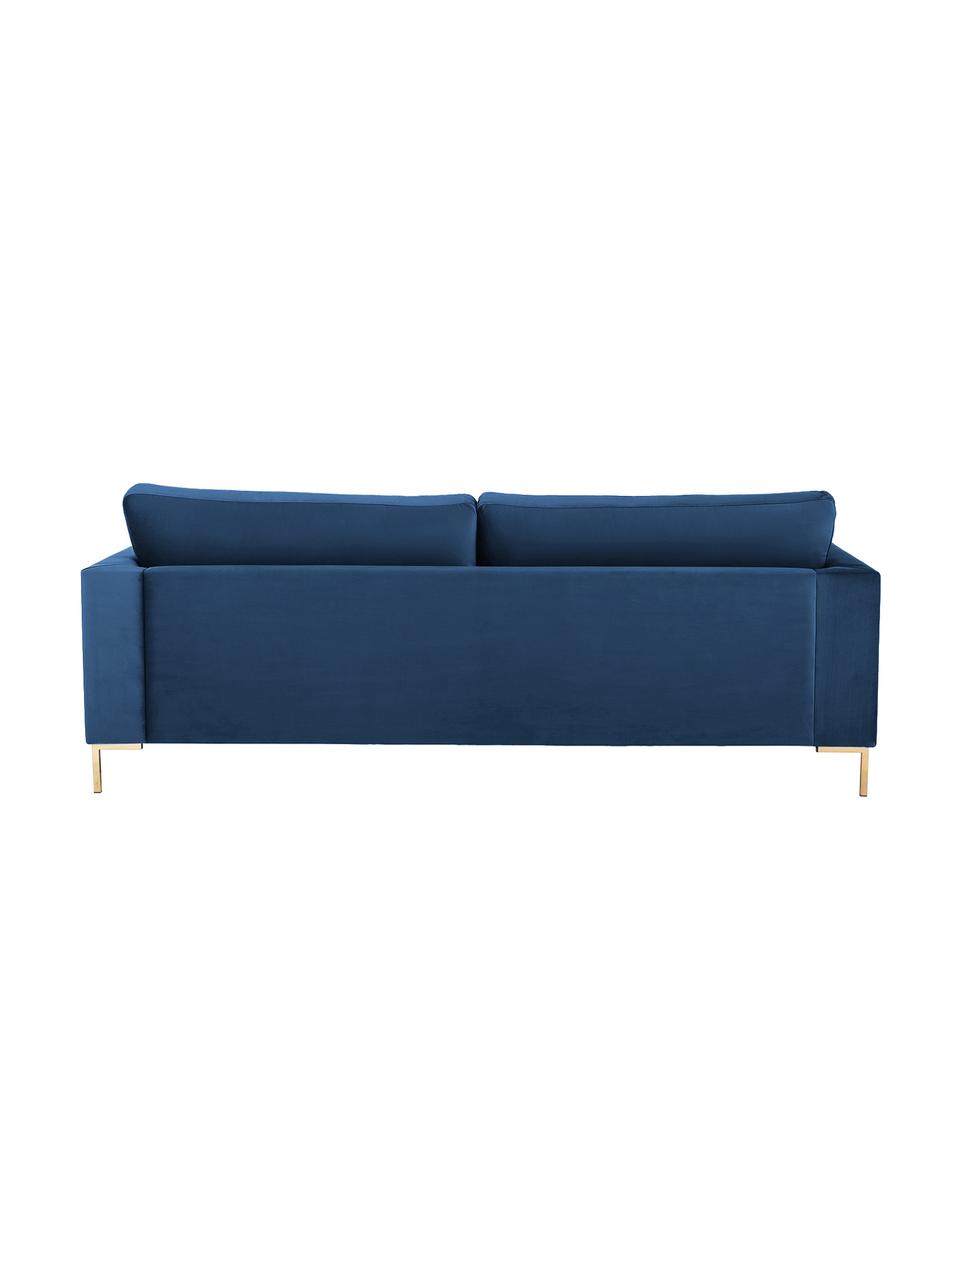 Samt-Sofa Luna (3-Sitzer) in Blau mit Metall-Füßen, Bezug: Samt (Polyester) Der hoch, Gestell: Massives Buchenholz, Füße: Metall, galvanisiert, Samt Blau, Gold, B 230 x T 95 cm